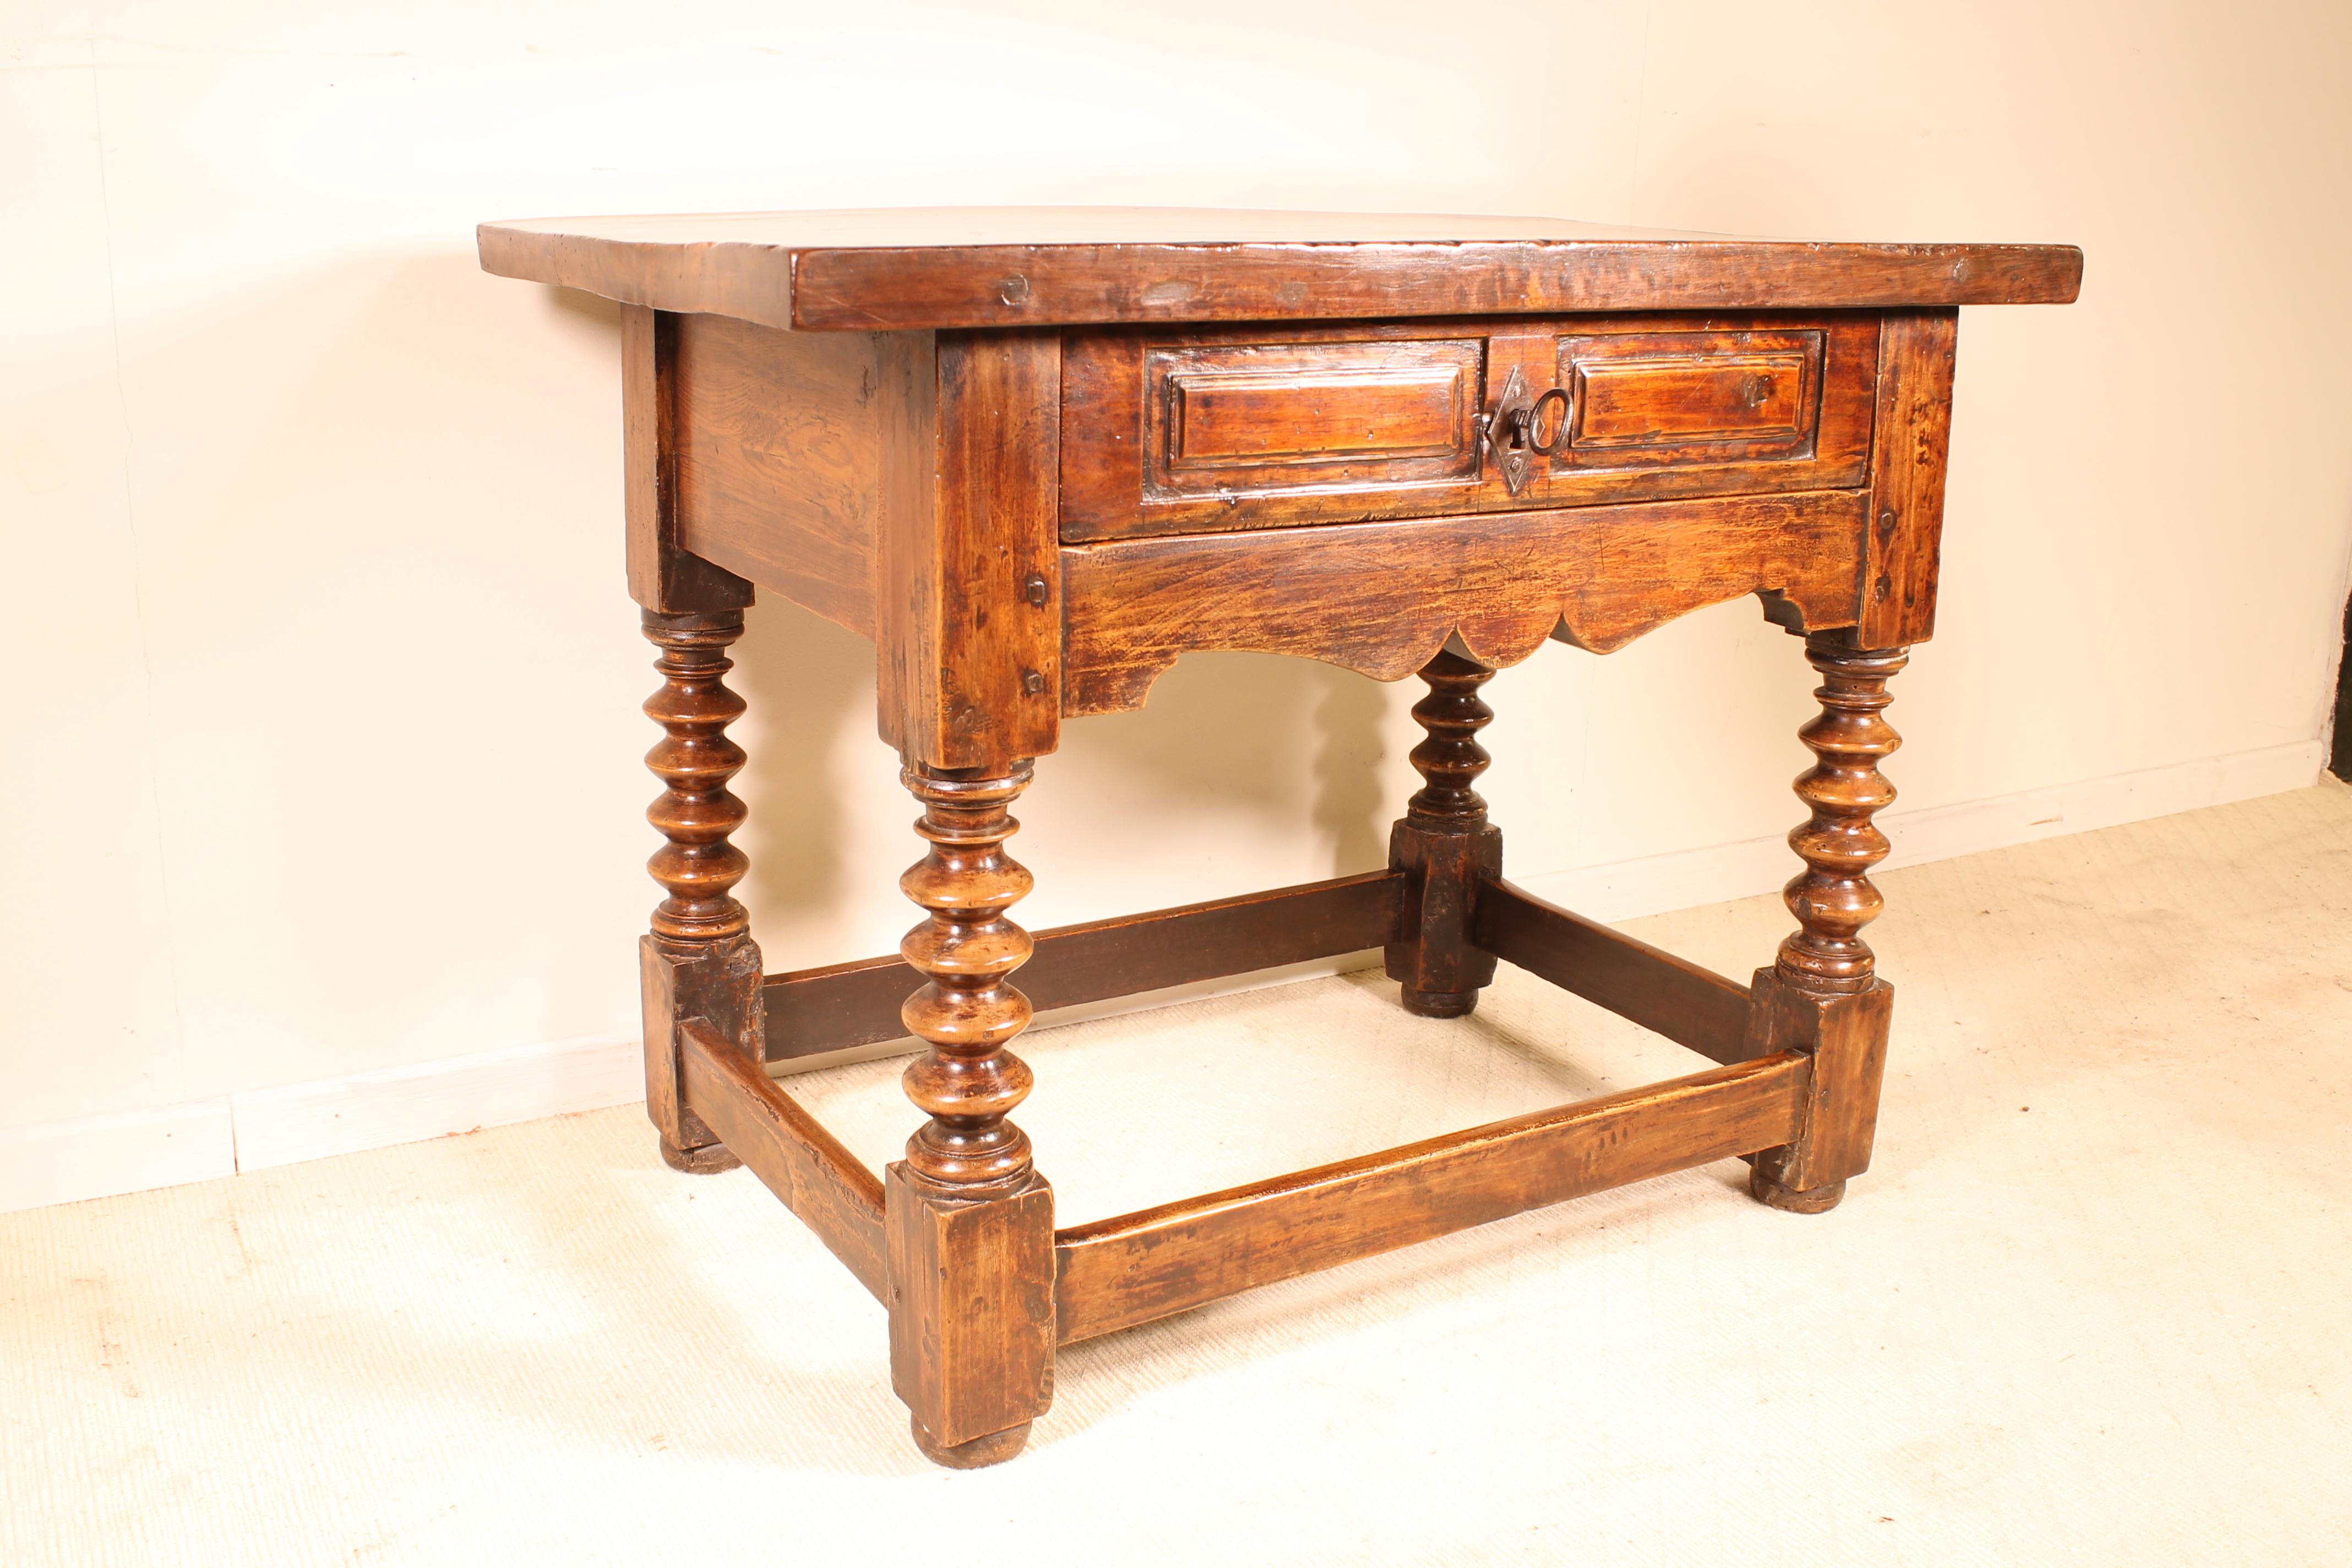 Spanischer Renaissance-Tisch aus Nussbaumholz, um 1600 
Erhabener kleiner Tisch mit einer schönen großen Nussbaumplatte. 

Sehr interessantes Untergestell mit gedrechselten Beinen, die dem Tisch ein schönes Gleichgewicht verleihen 

Schöne